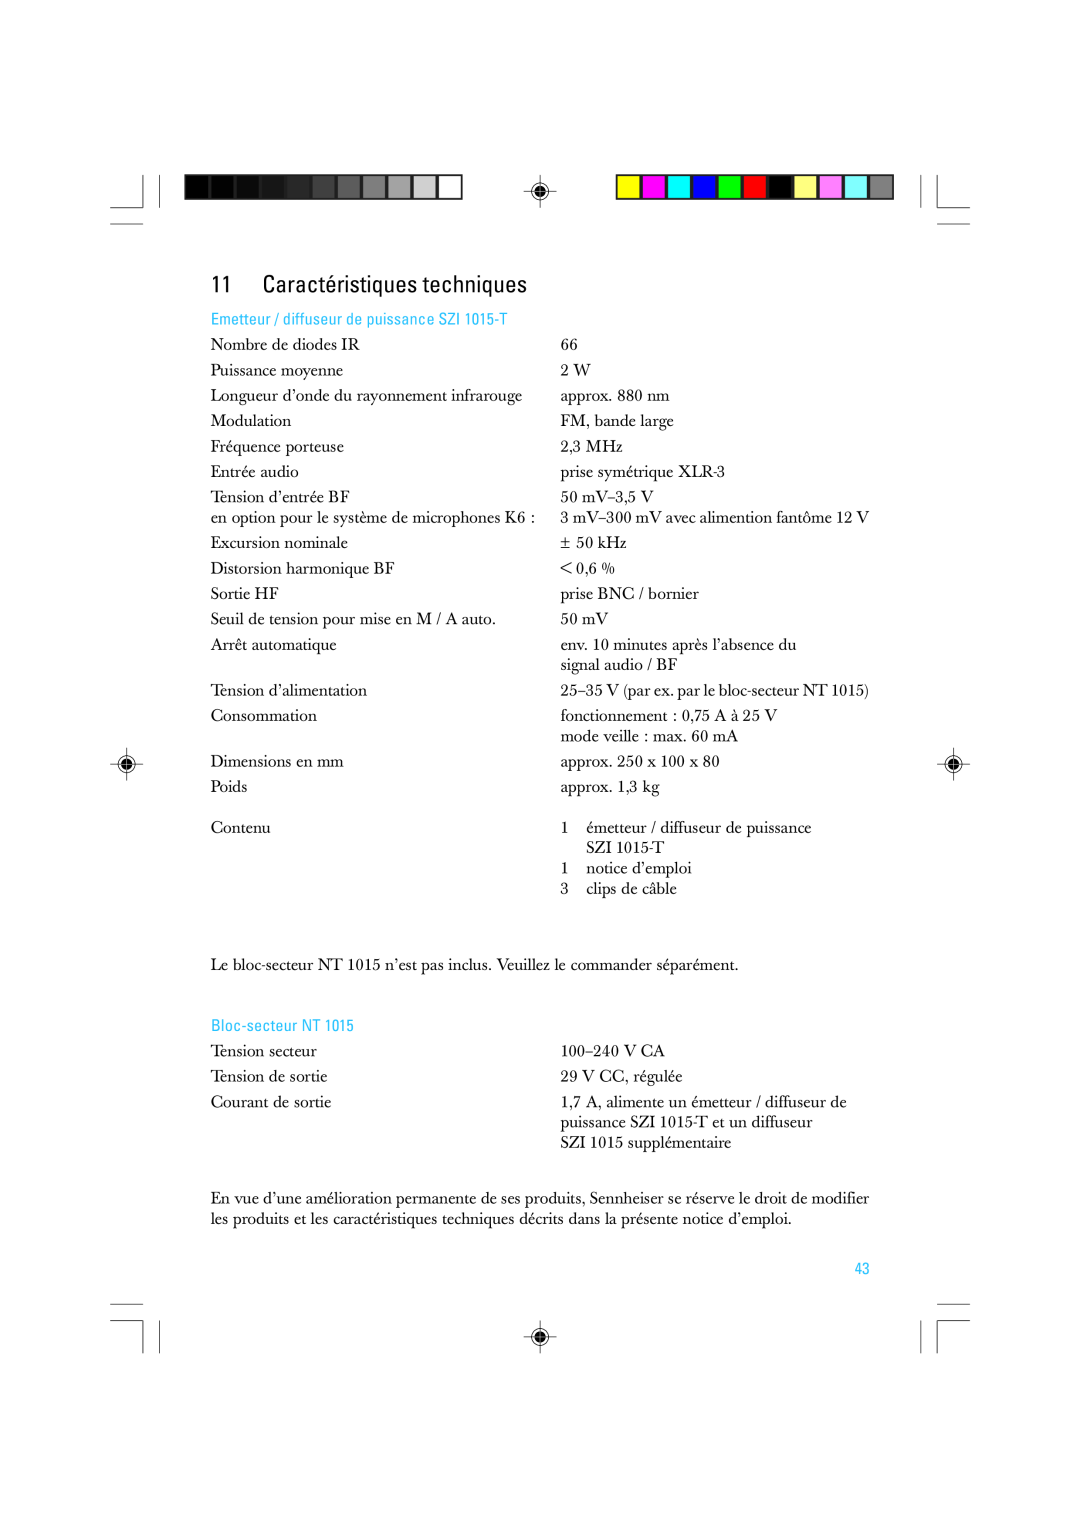 Sennheiser manual Caractéristiques techniques, Emetteur / diffuseur de puissance SZI 1015-T, Bloc-secteurNT 